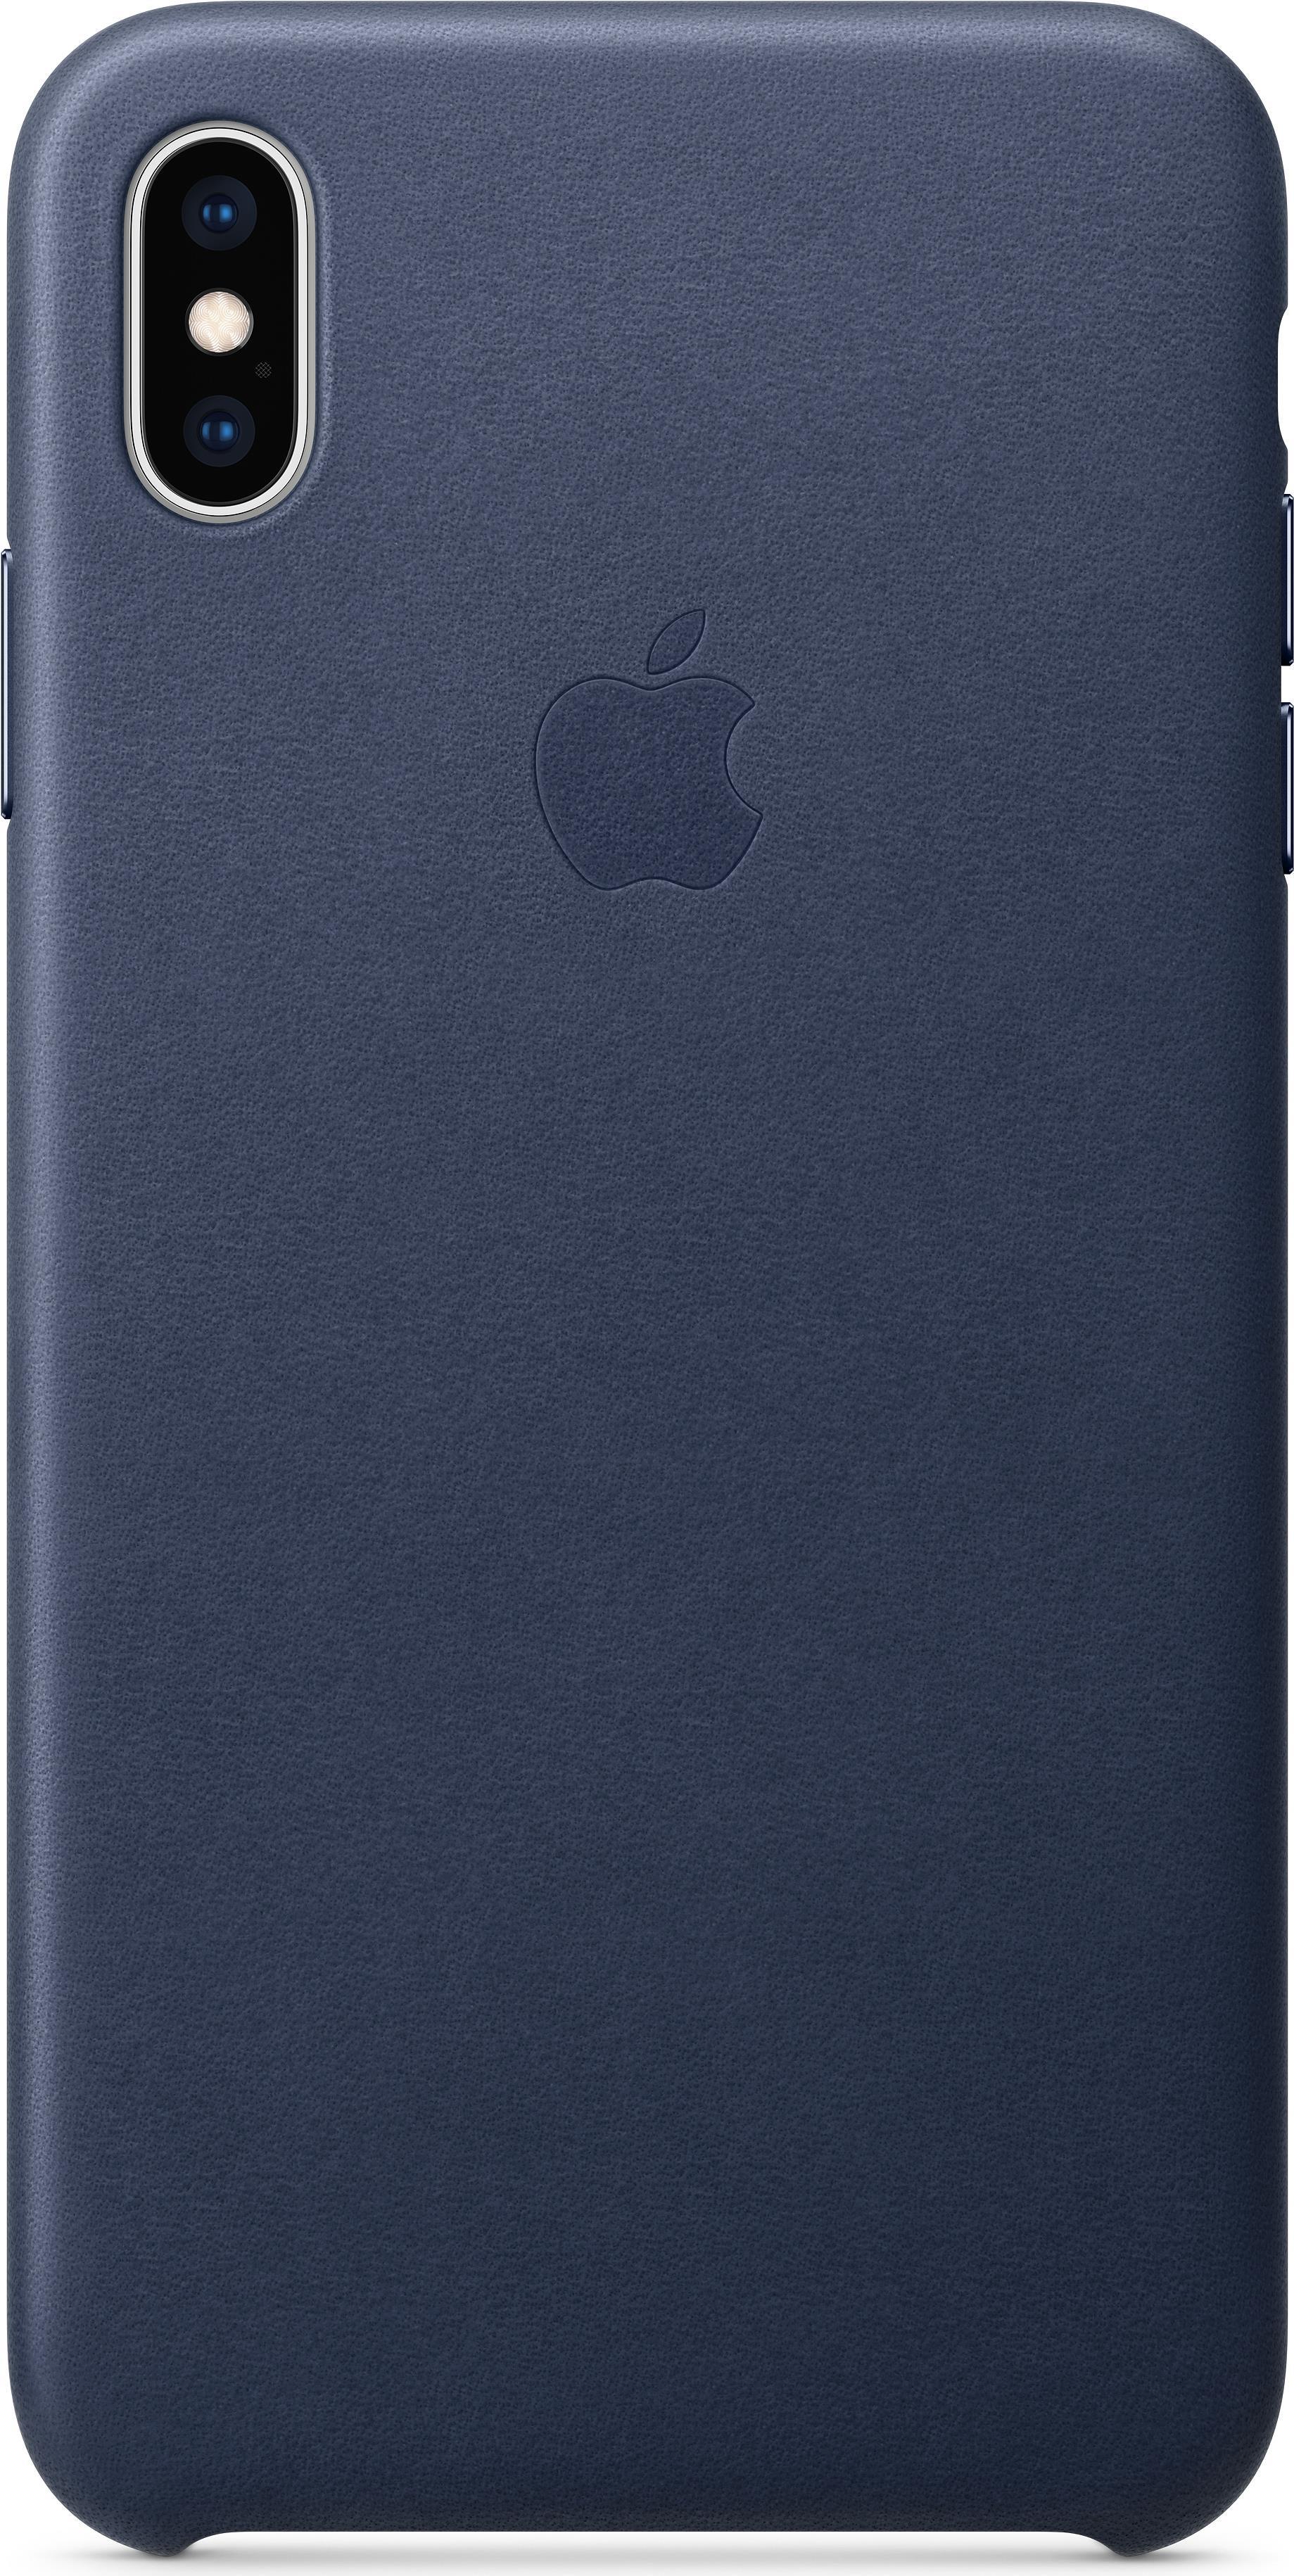 Apple - Hintere Abdeckung für Mobiltelefon - Leder - Mitternachtsblau - für iPhone Xs Max (MRWU2ZM/A)